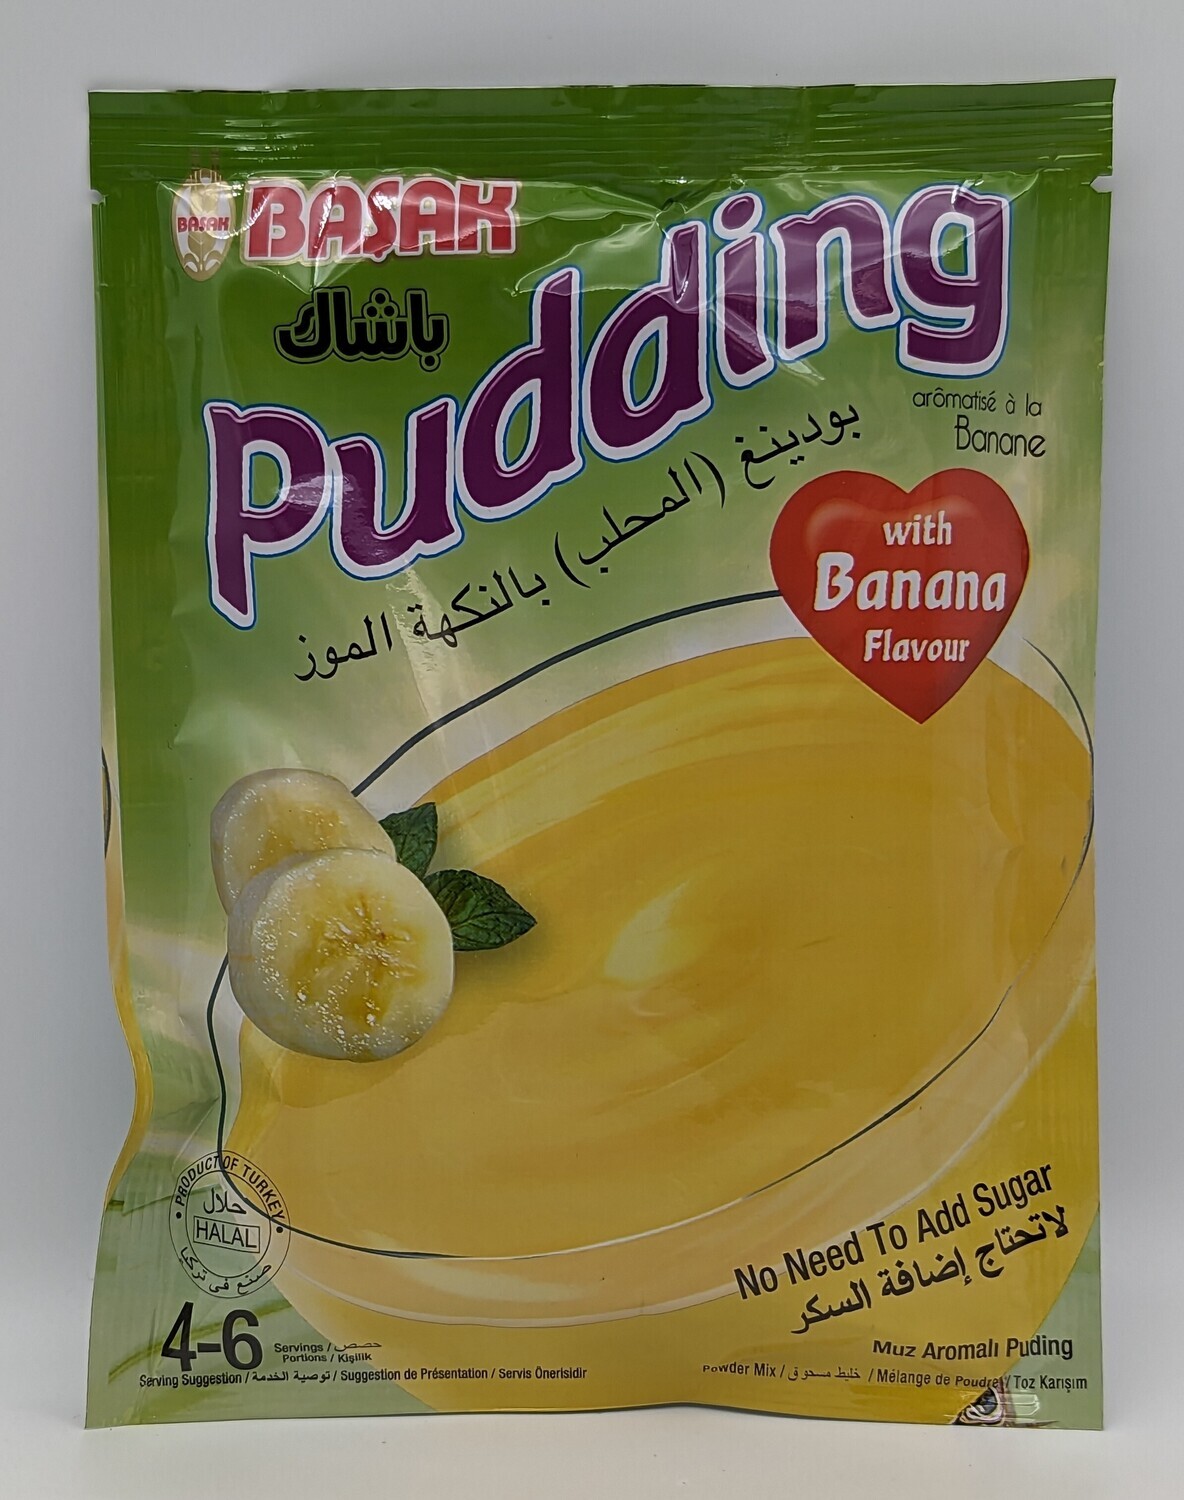 BASAK Pudding with Banana Flavor 130g